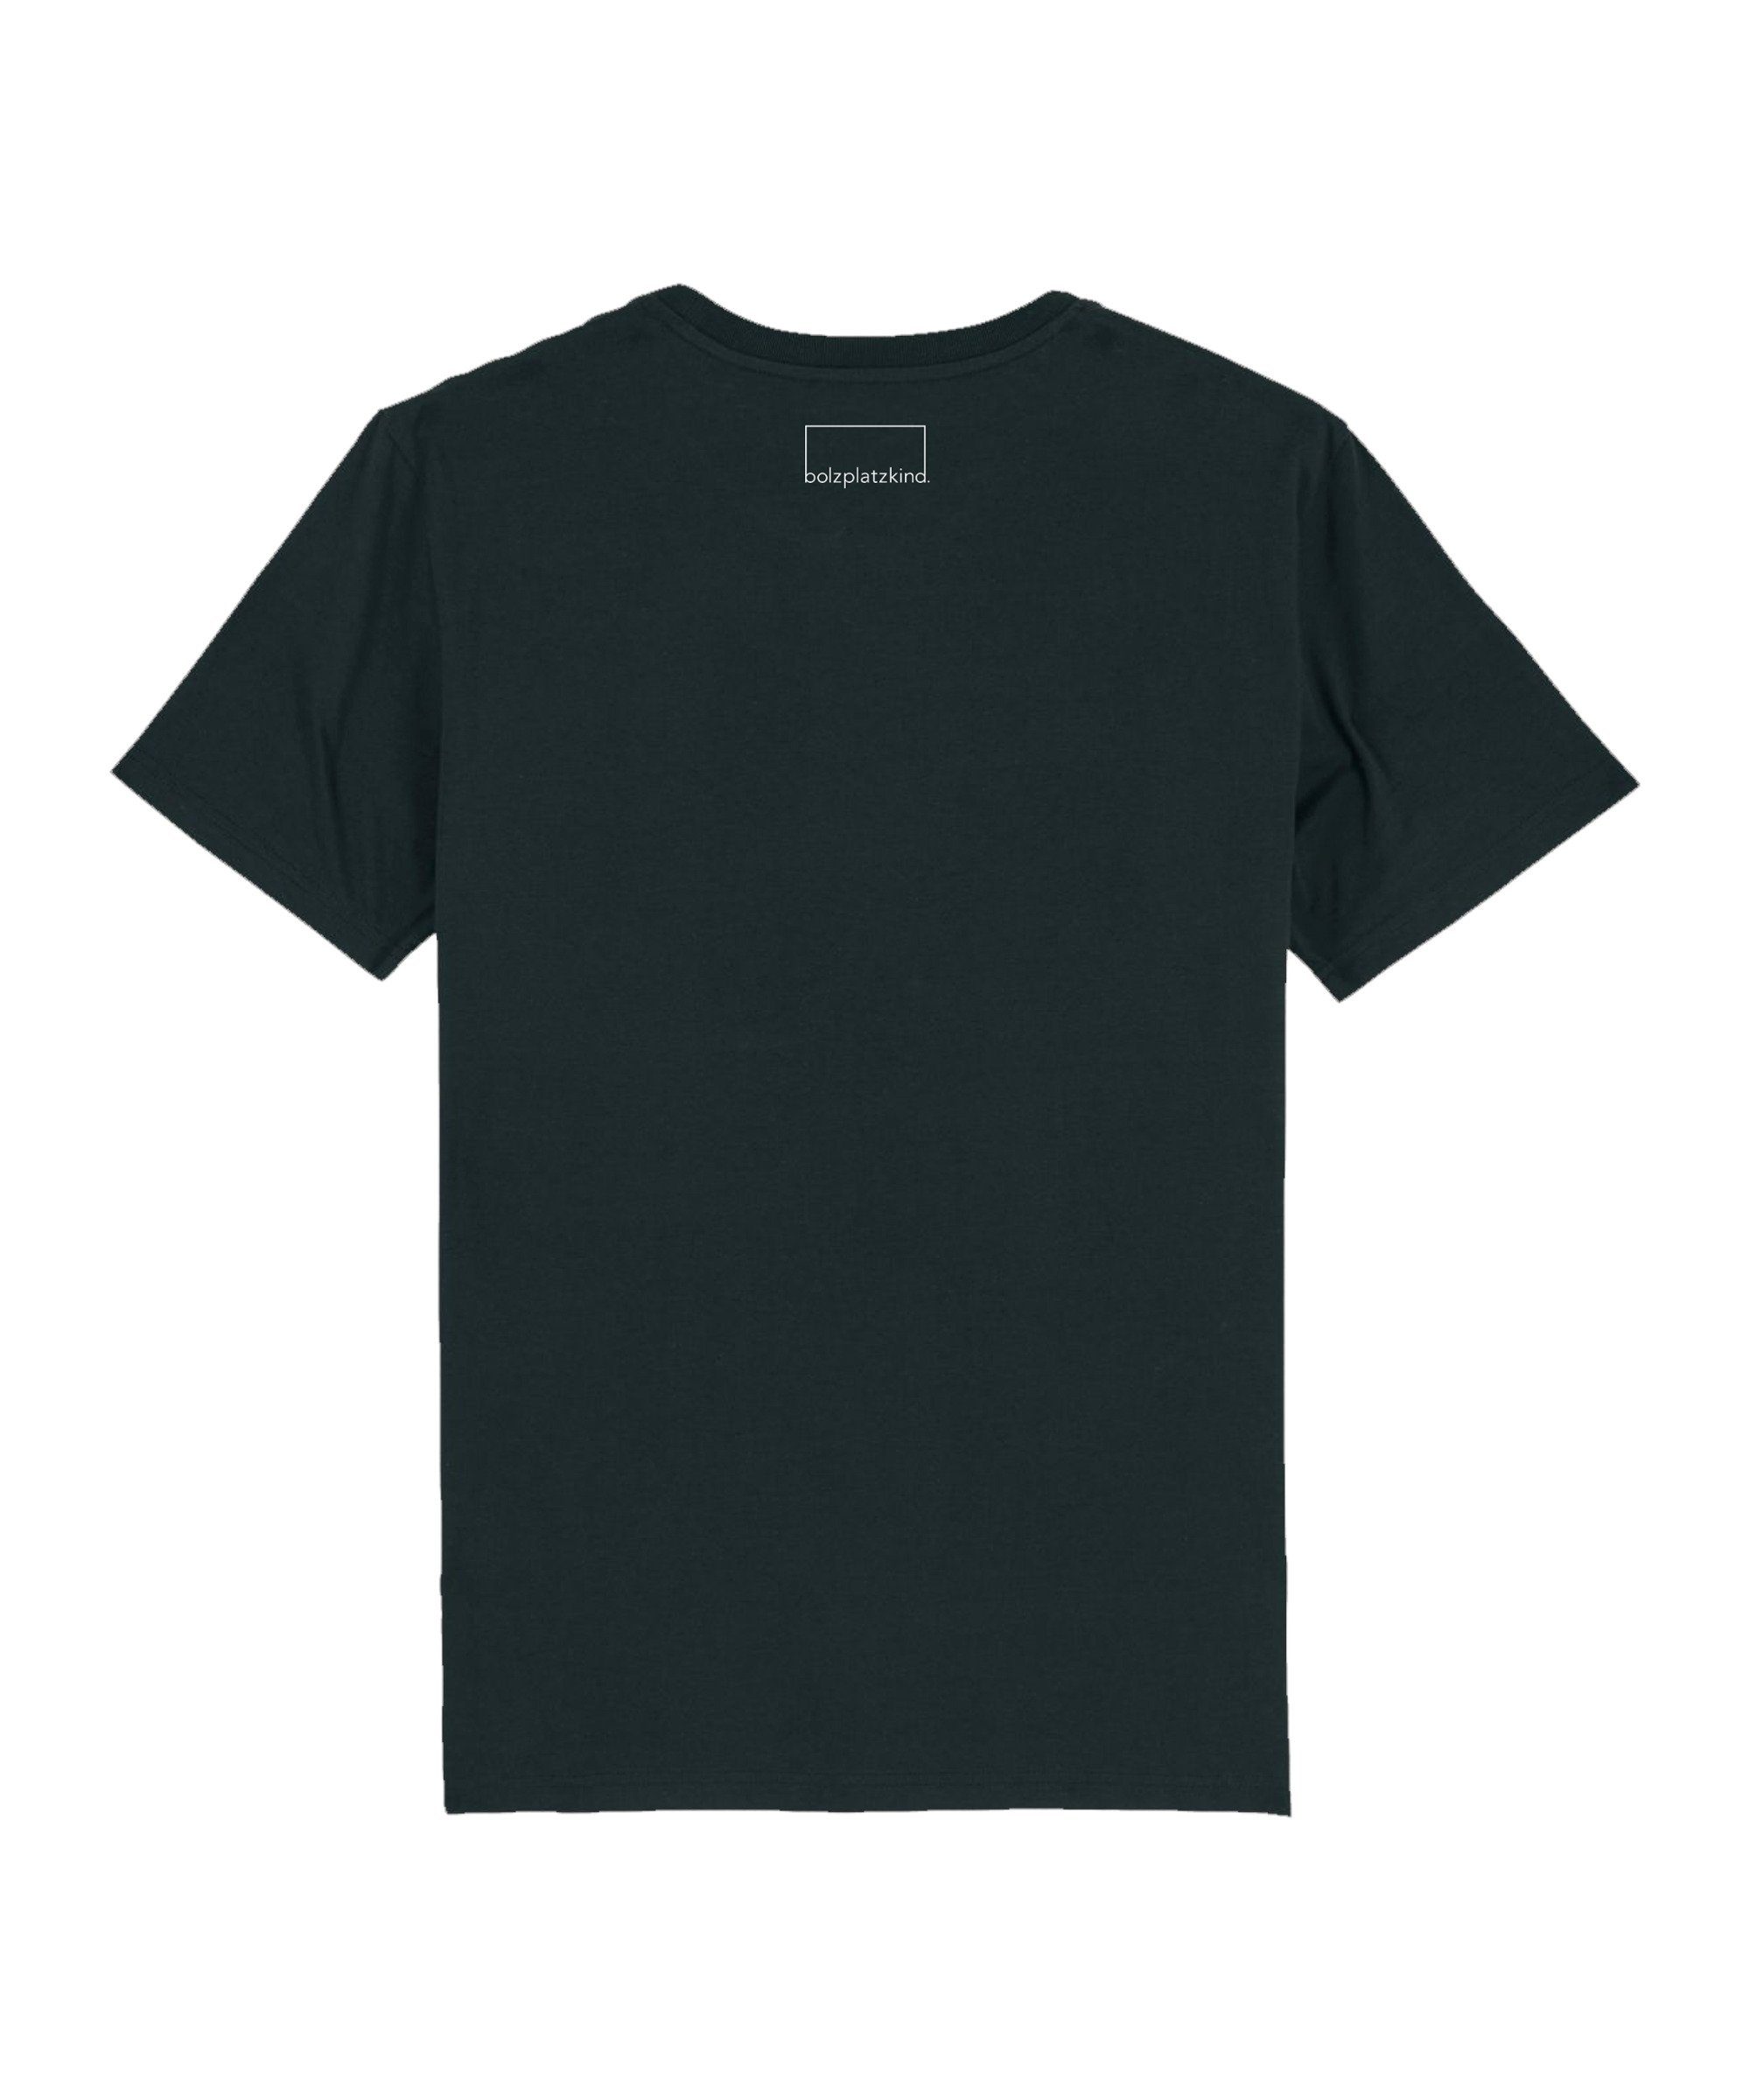 Bolzplatzkind T-Shirt Produkt "Karrieremodus" T-Shirt schwarz Nachhaltiges